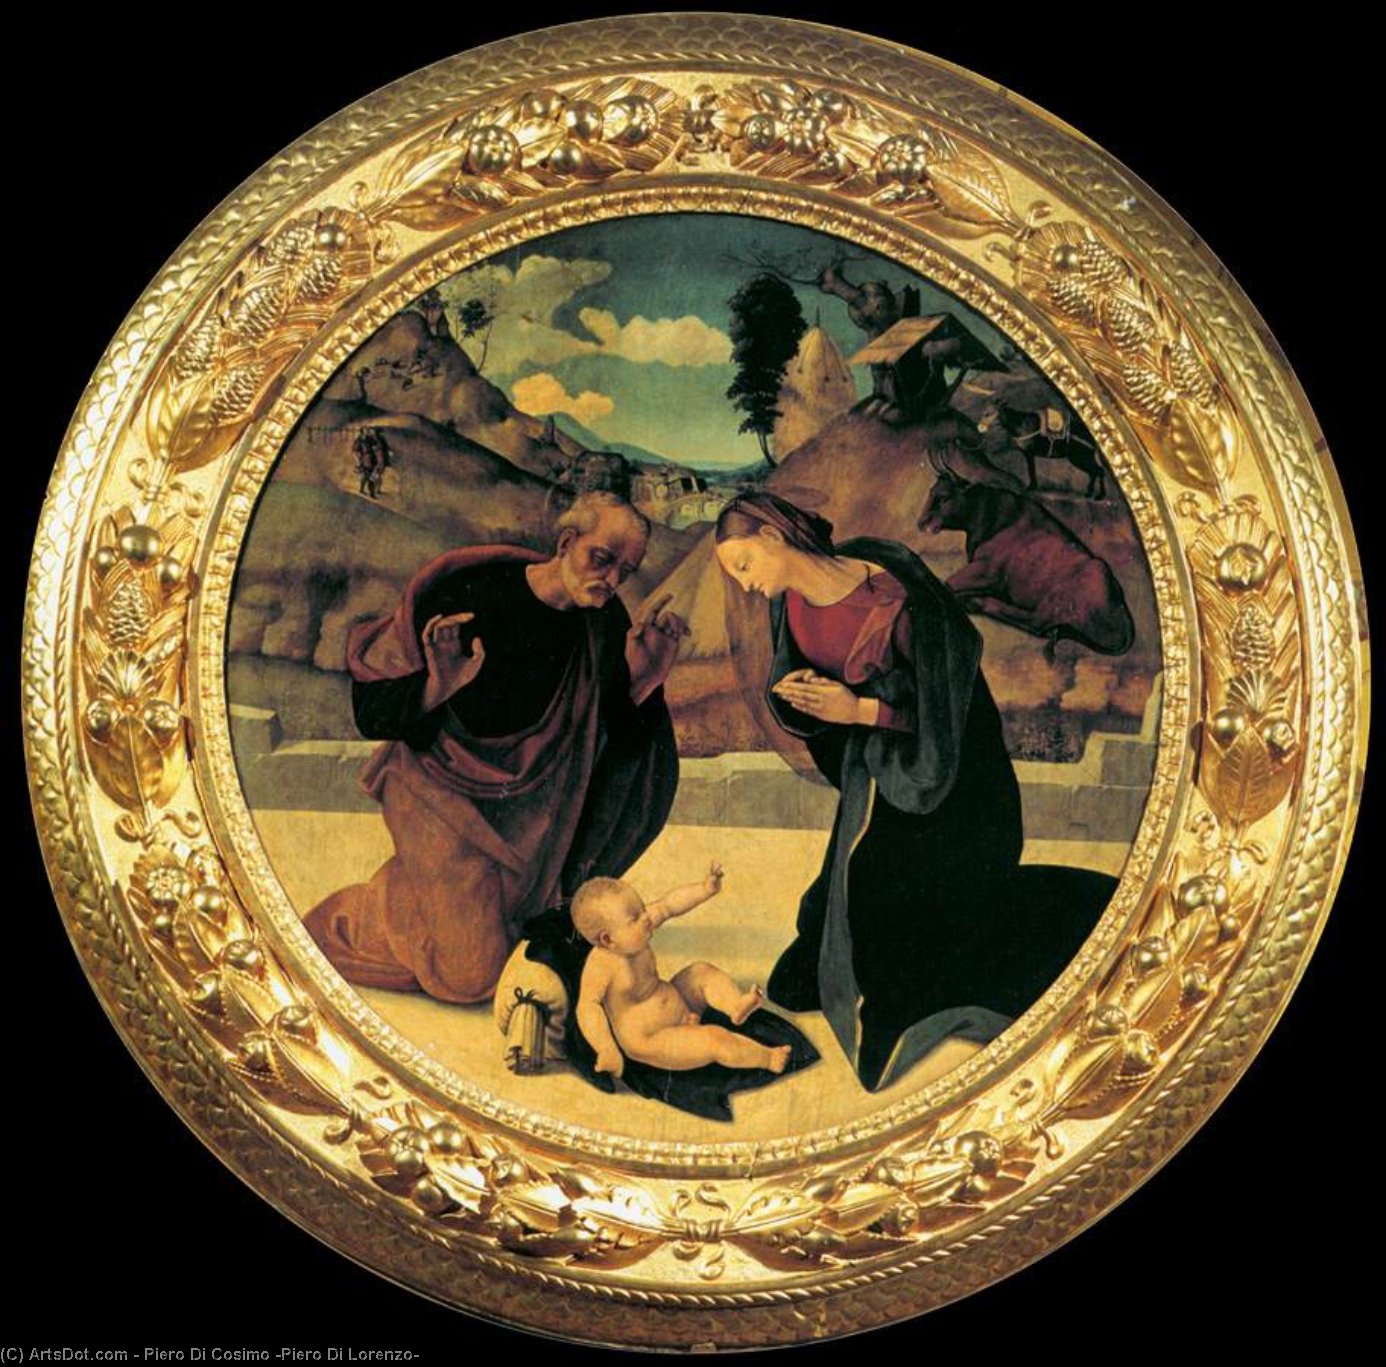 Compra Riproduzioni D'arte Del Museo Adorazione del Bambino, 1510 di Piero Di Cosimo (Piero Di Lorenzo) (1462-1522, Italy) | ArtsDot.com